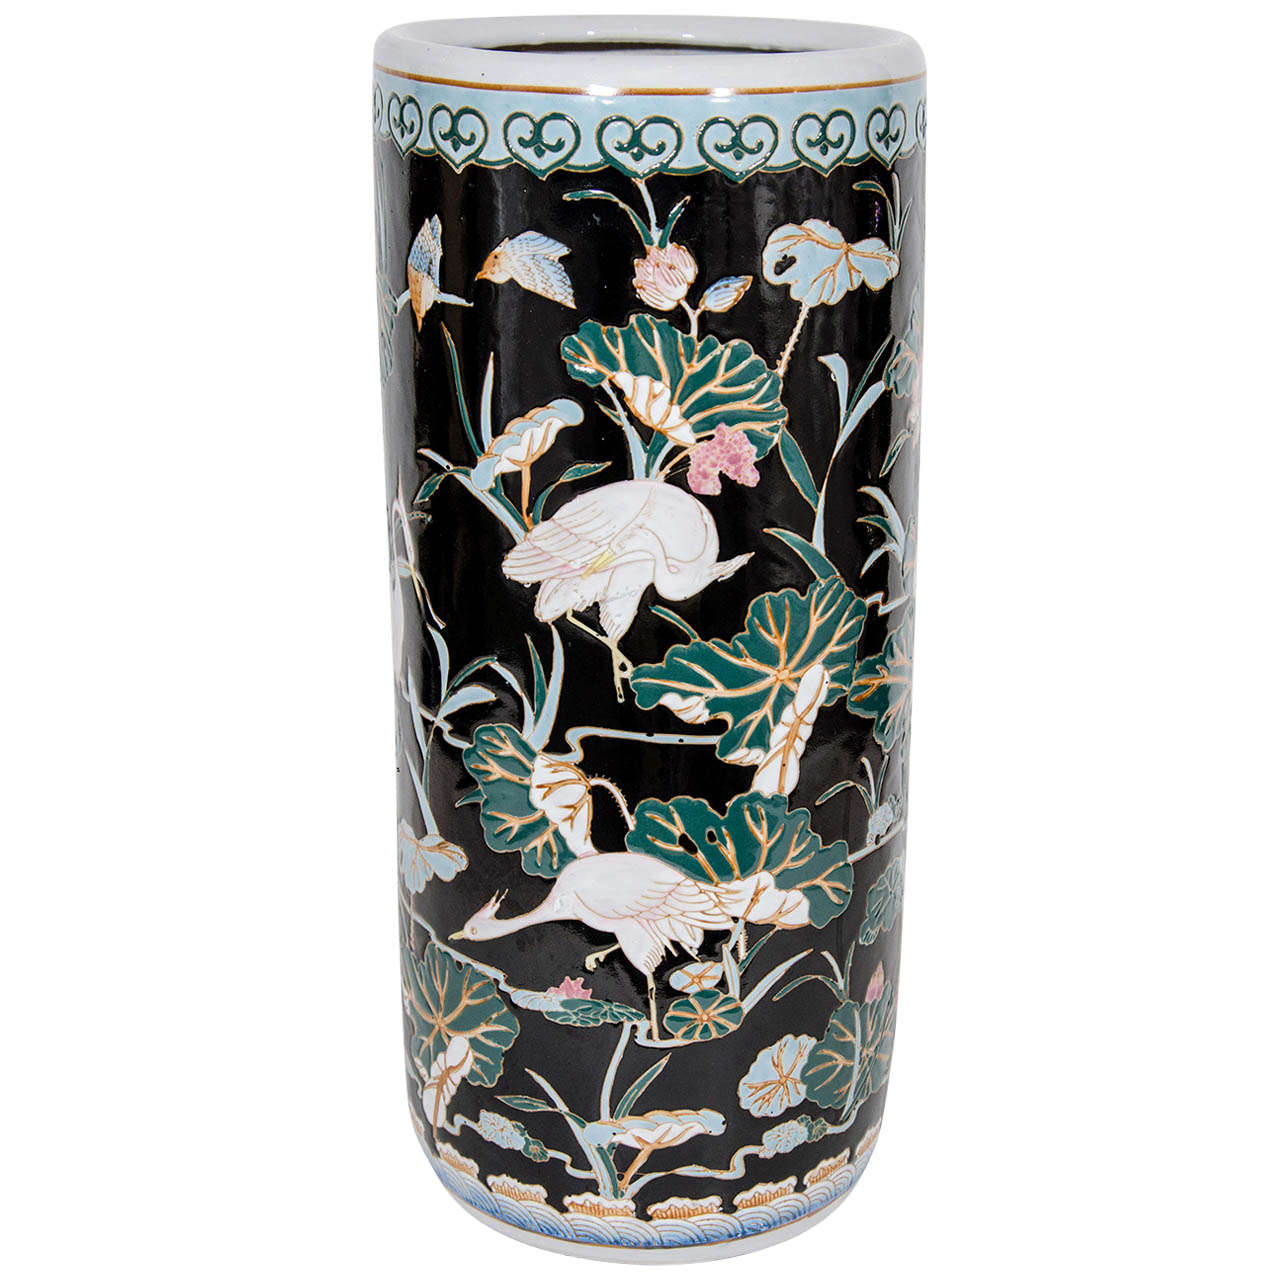 Umbrella Stand Porcelain Vase Vintage Oriental Style Rose Medallion Design Home Decor Trouwen Accessoires Paraplus 